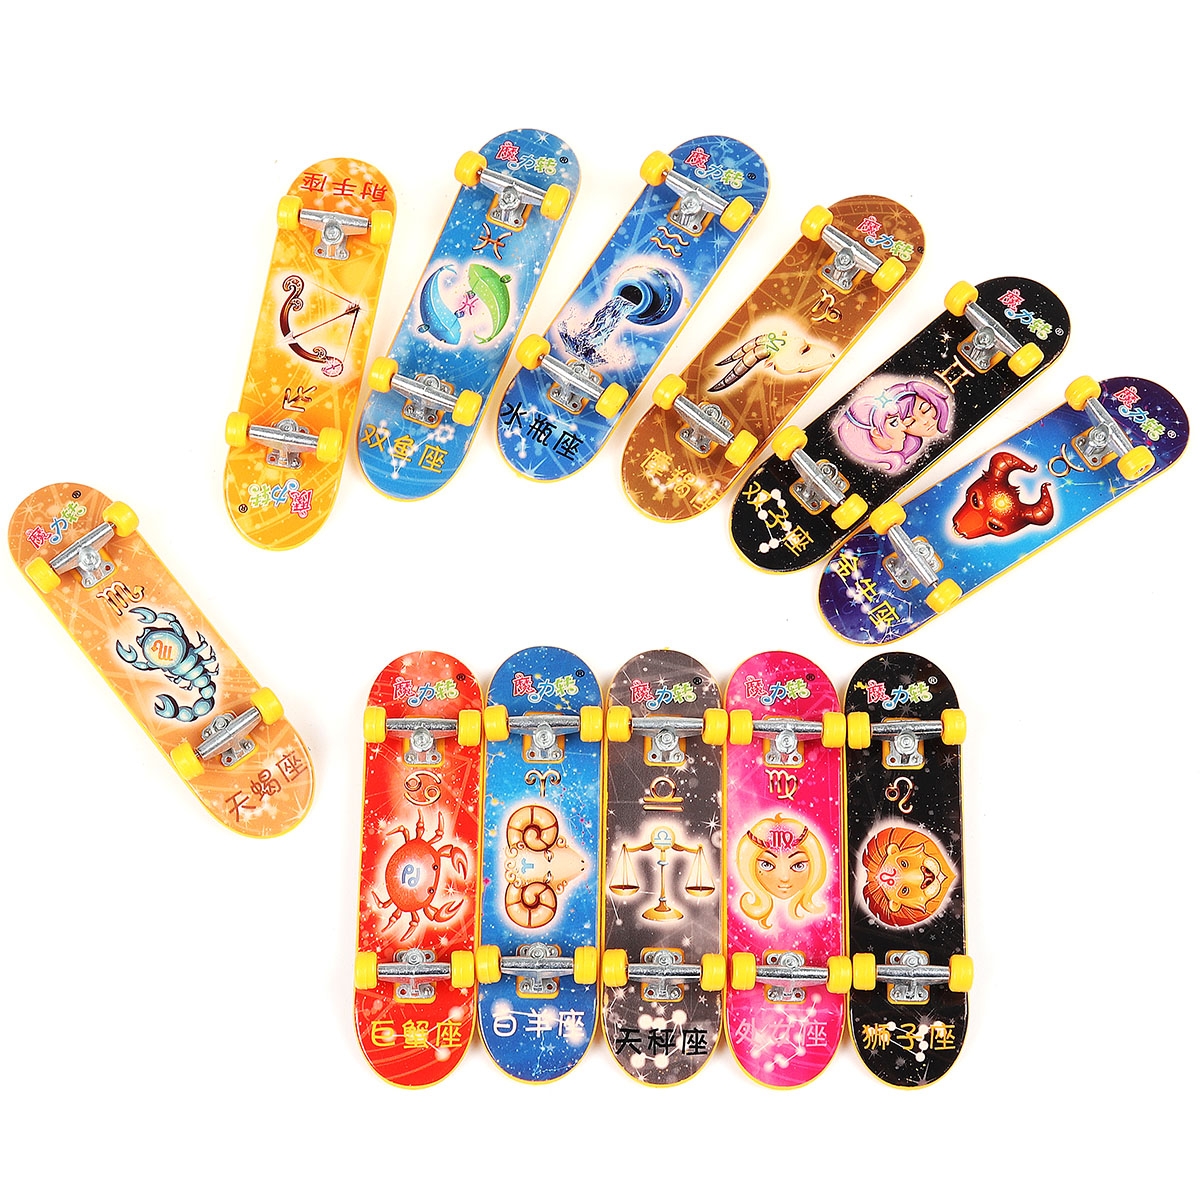 Multi-color Constellations Graffiti Finger Skateboard Truck Mini Board Novelties Toys for Children Gift